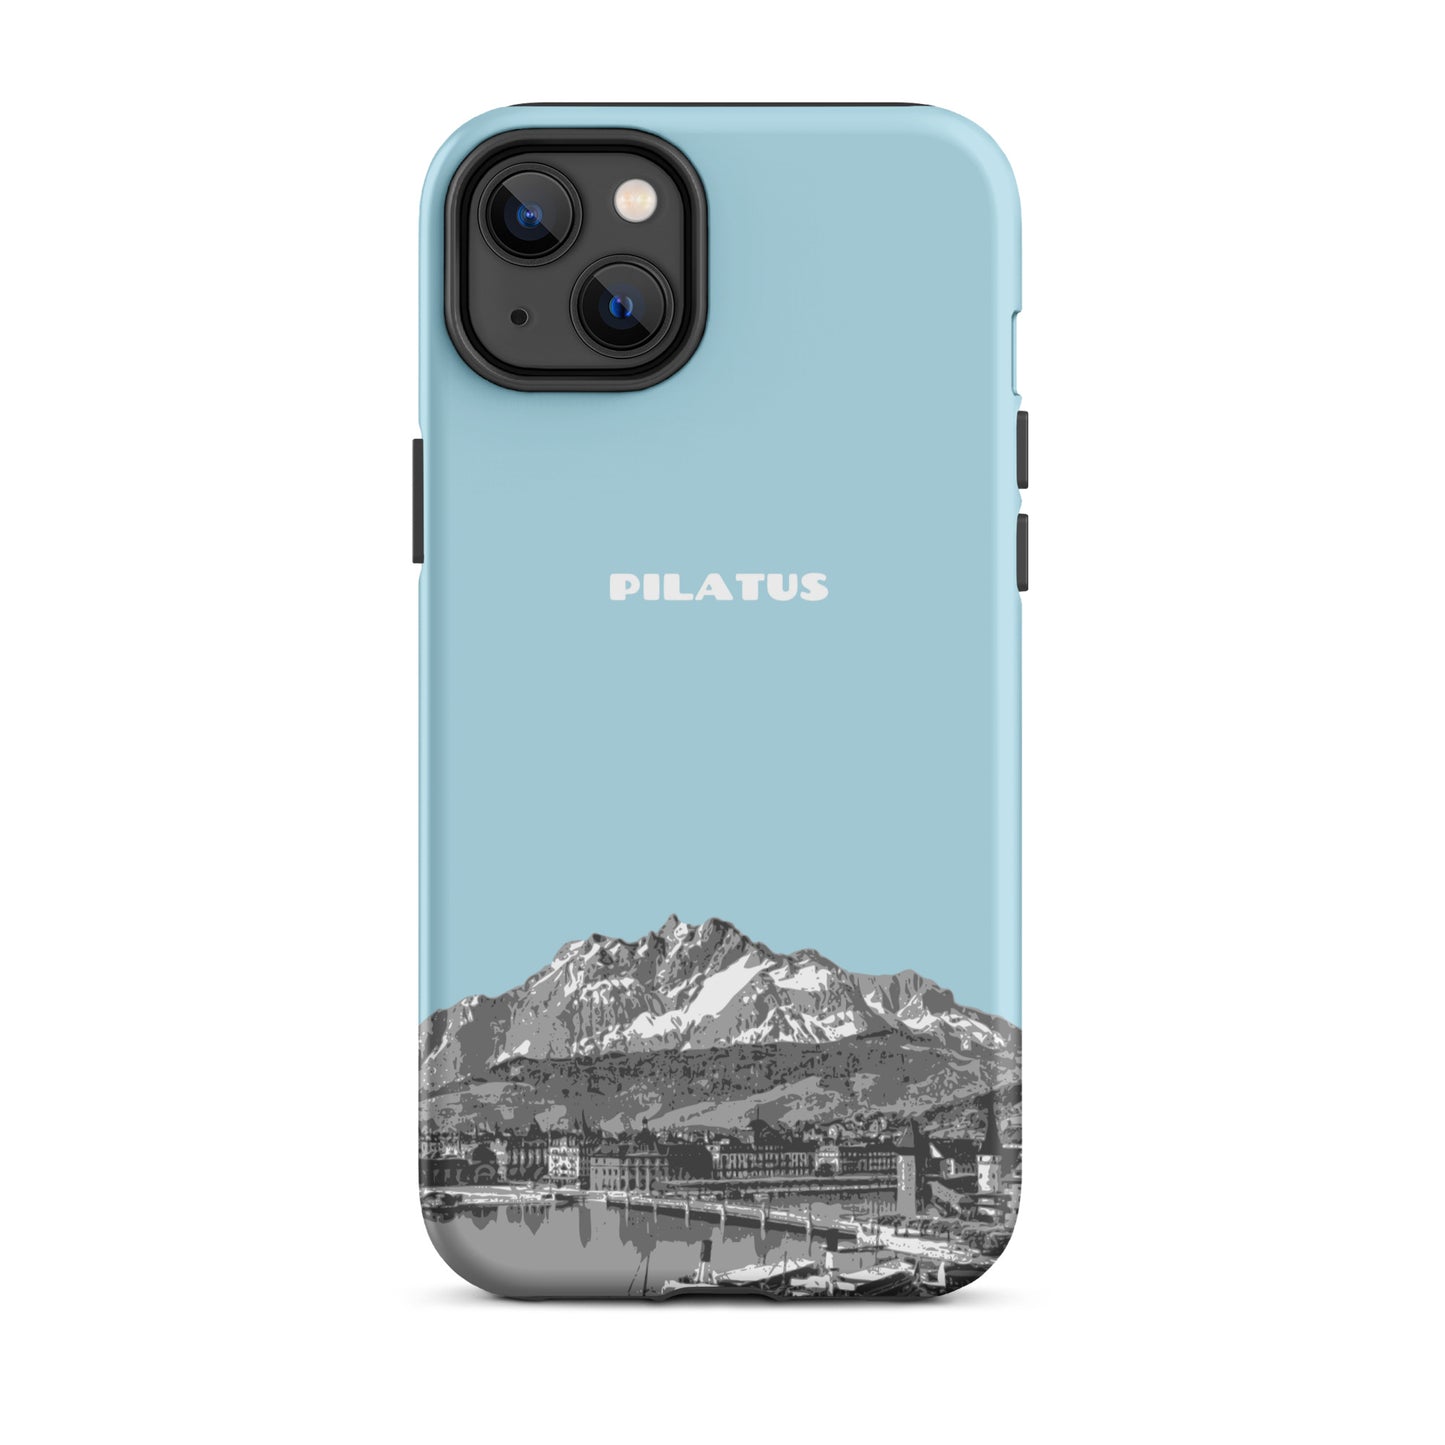 iPhone Case - Pilatus - Hellblau